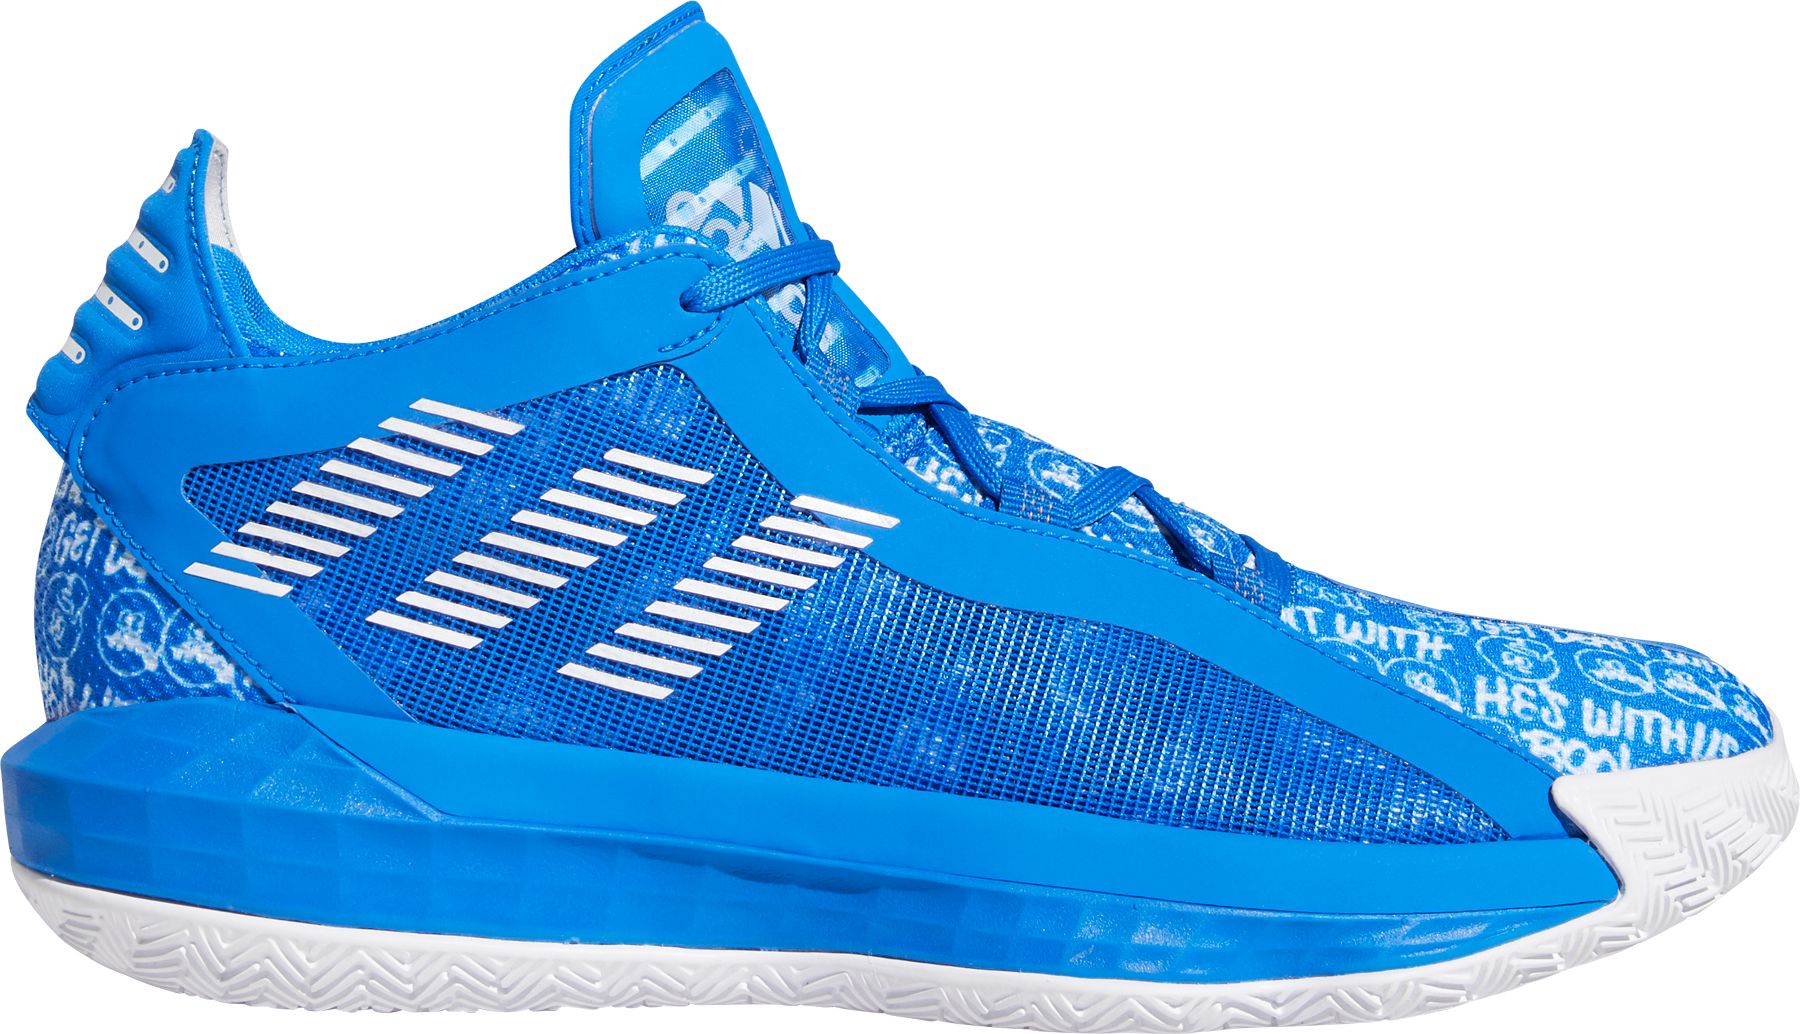 adidas dame 6 basketball shoes